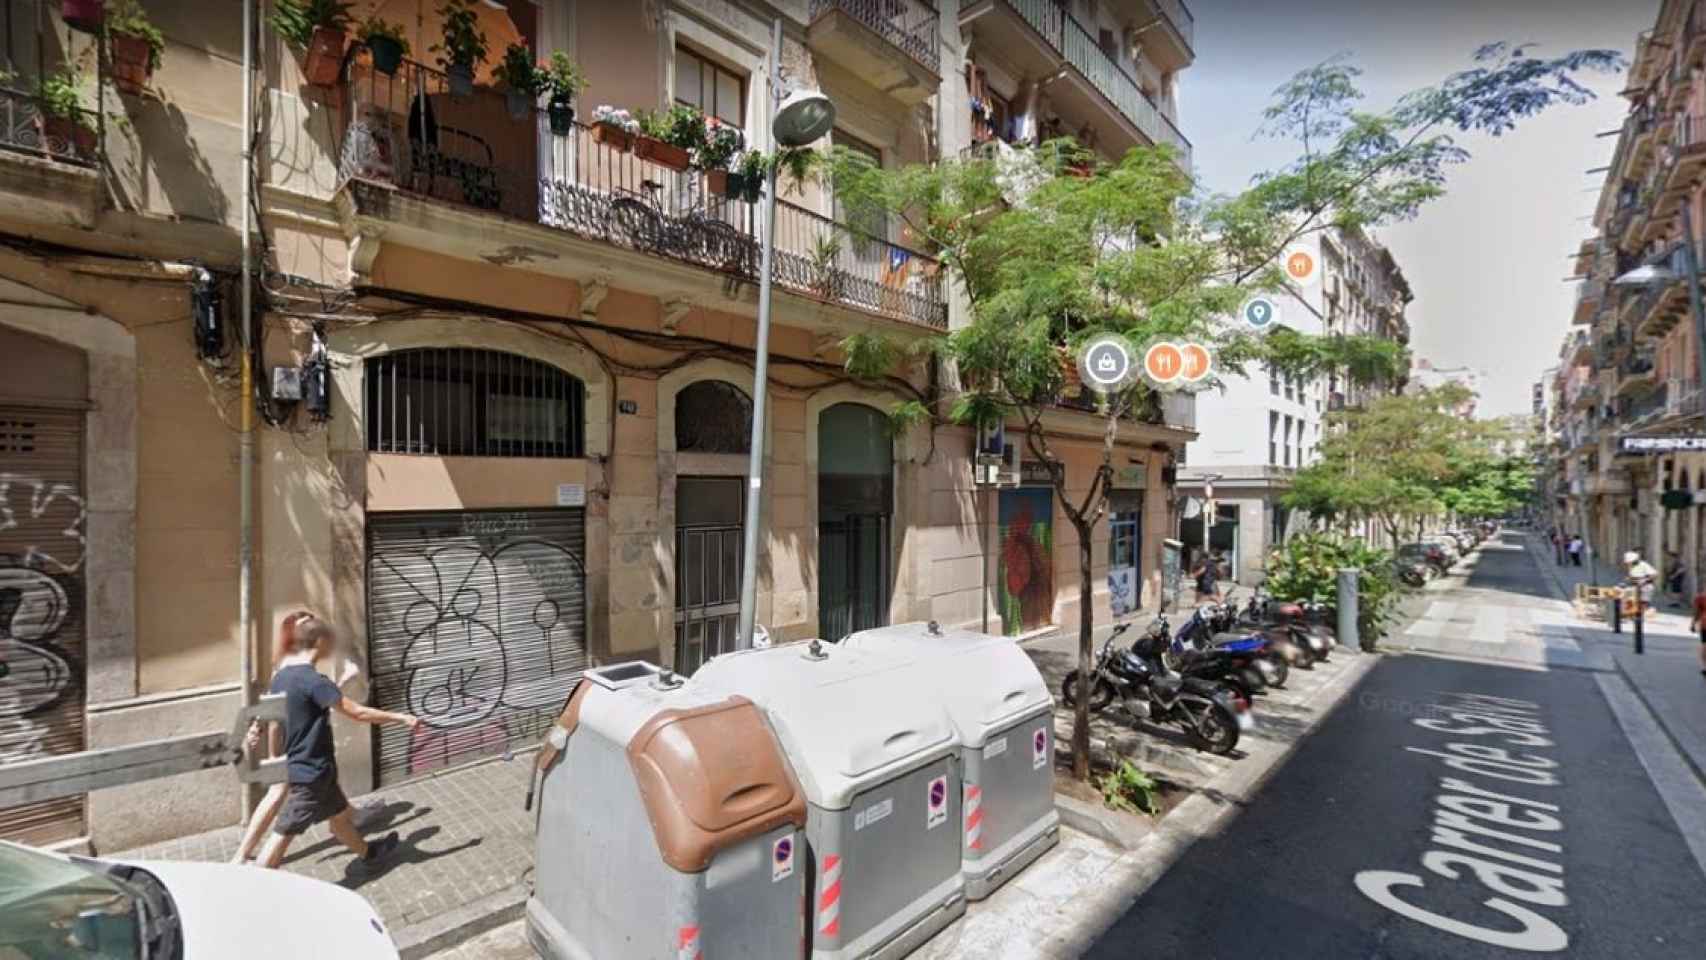 El número 40 de la calle de Salvà, en el barrio del Poble-sec, Barcelona / GOOGLE MAPS